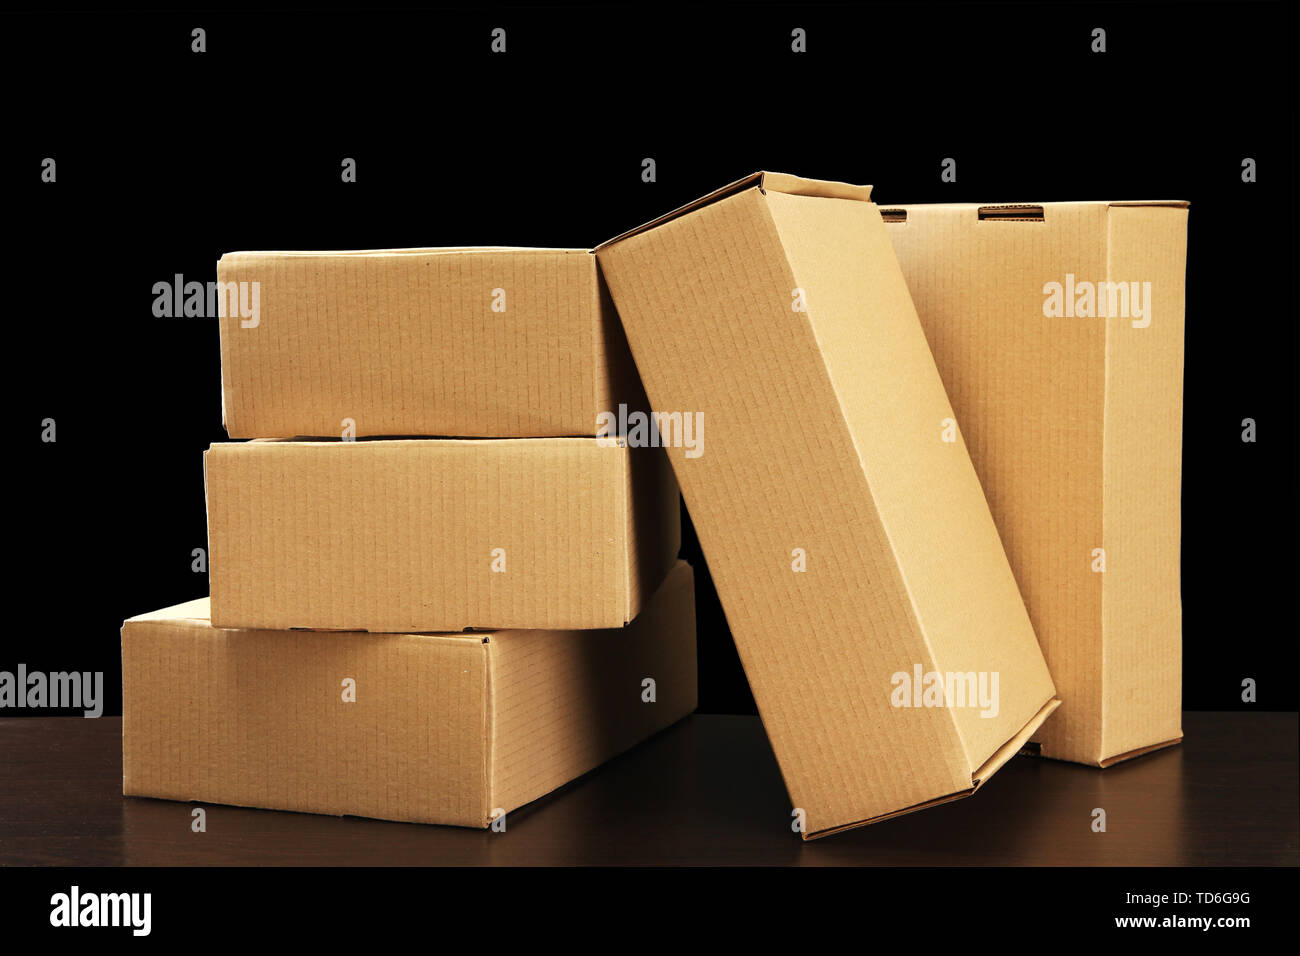 https://c8.alamy.com/comp/TD6G9G/parcels-boxes-on-wooden-table-on-black-background-TD6G9G.jpg